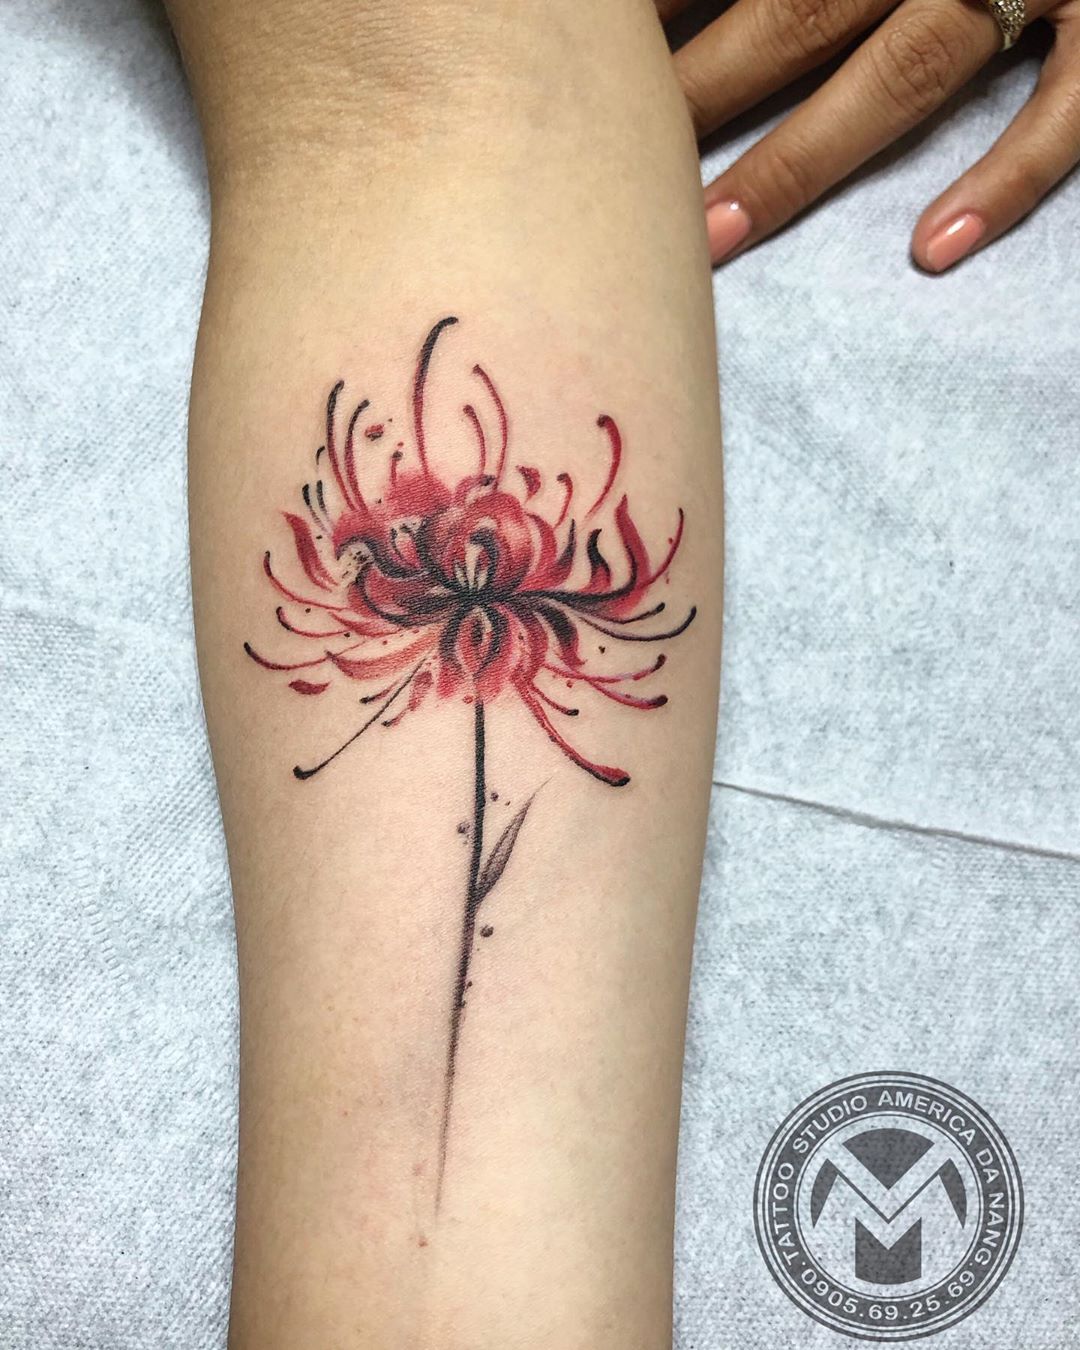 Hὶnh xǎm hoa bỉ ngạn trên cánh tay